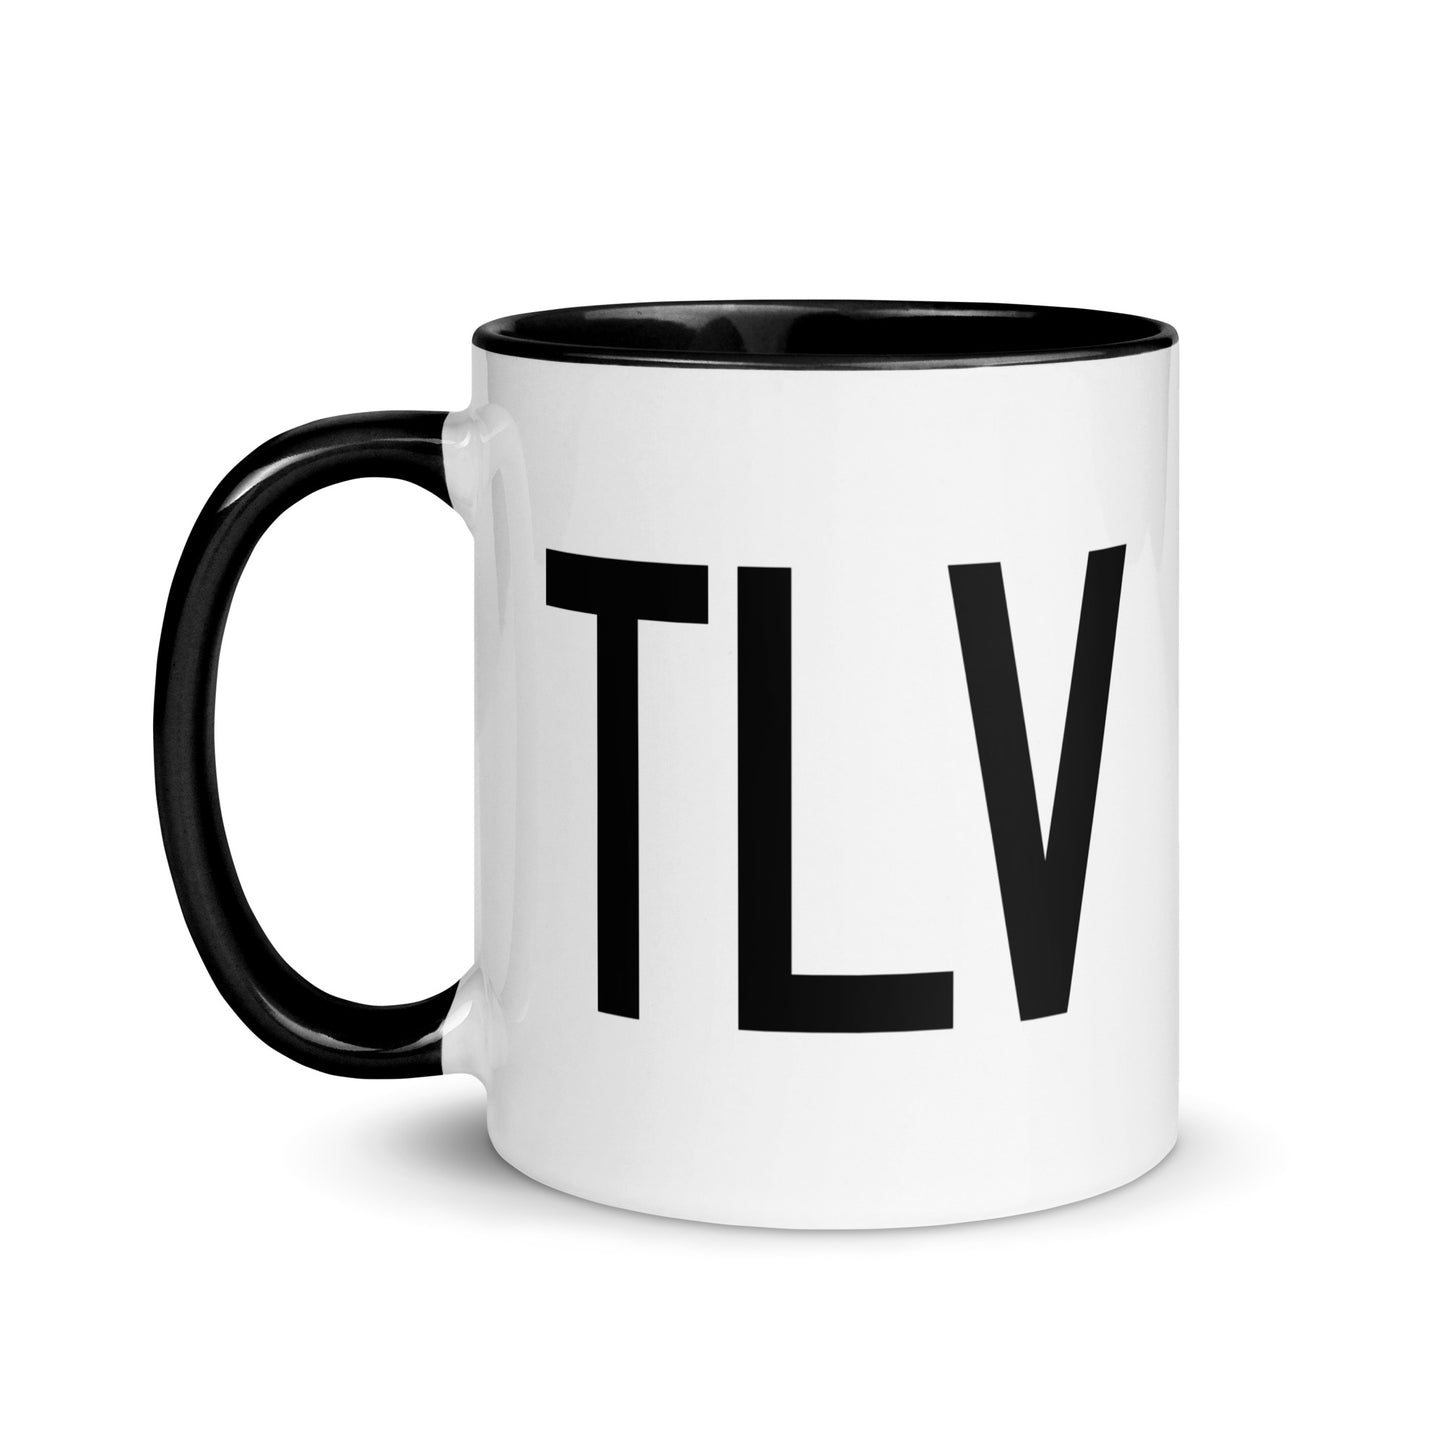 Aviation-Theme Coffee Mug - Black • TLV Tel Aviv • YHM Designs - Image 03